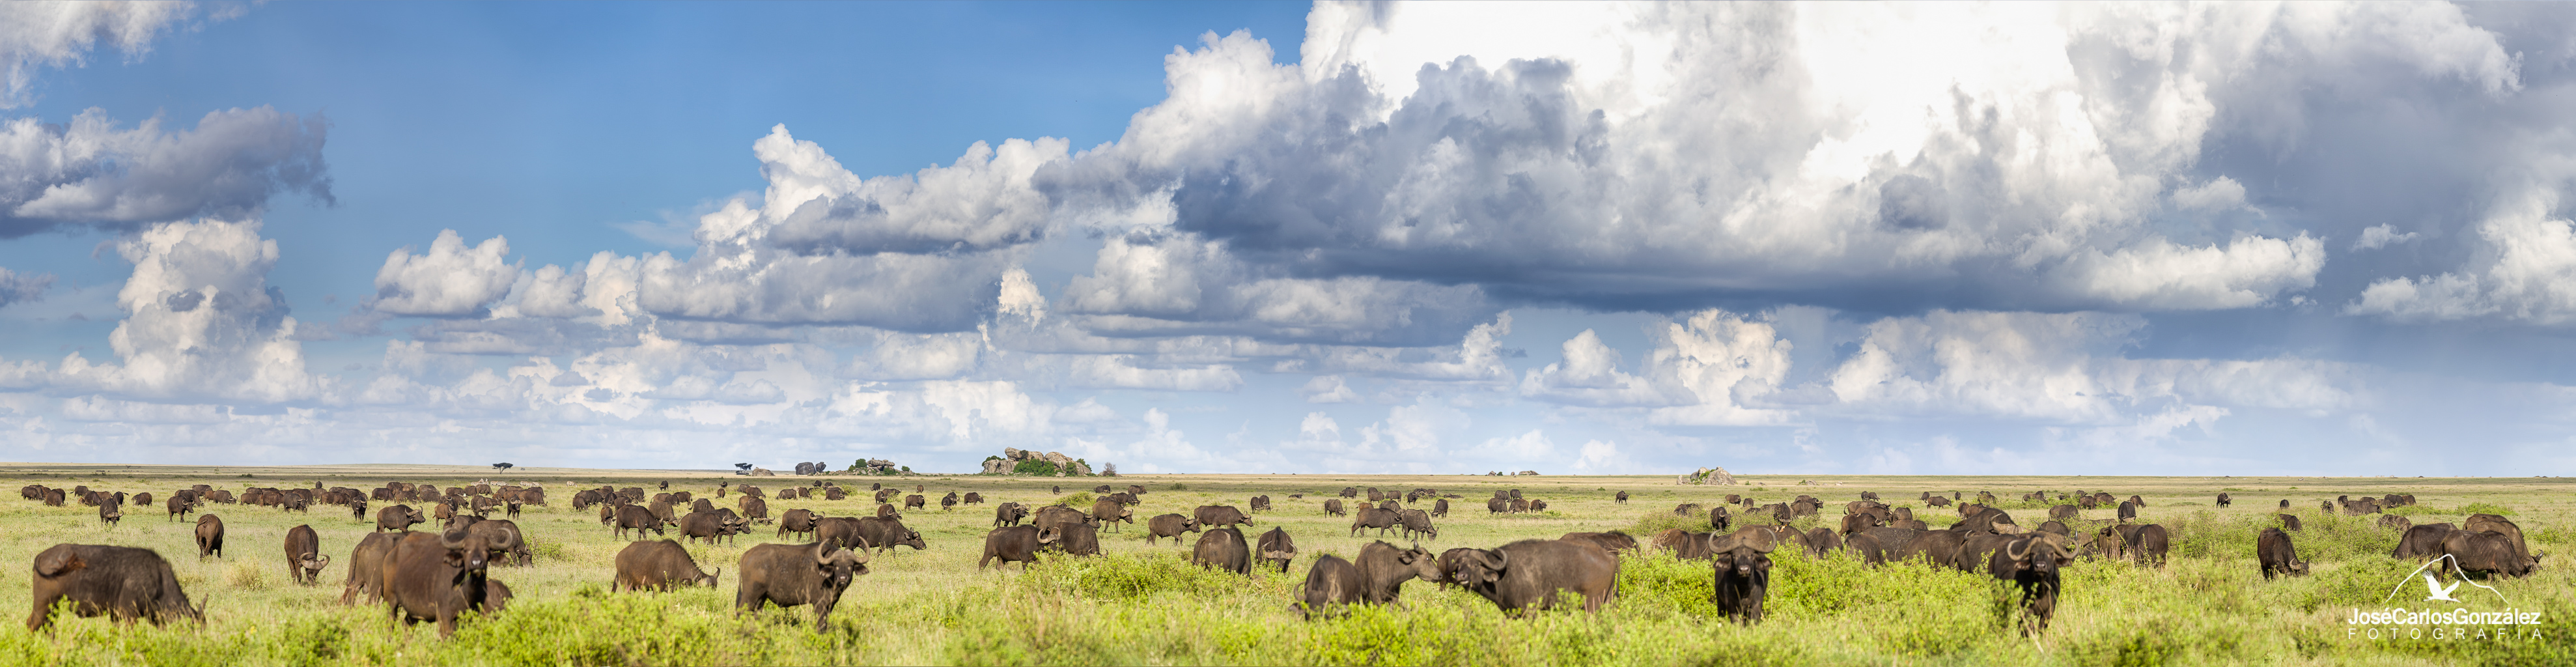 Serengeti - Manada de búfalos